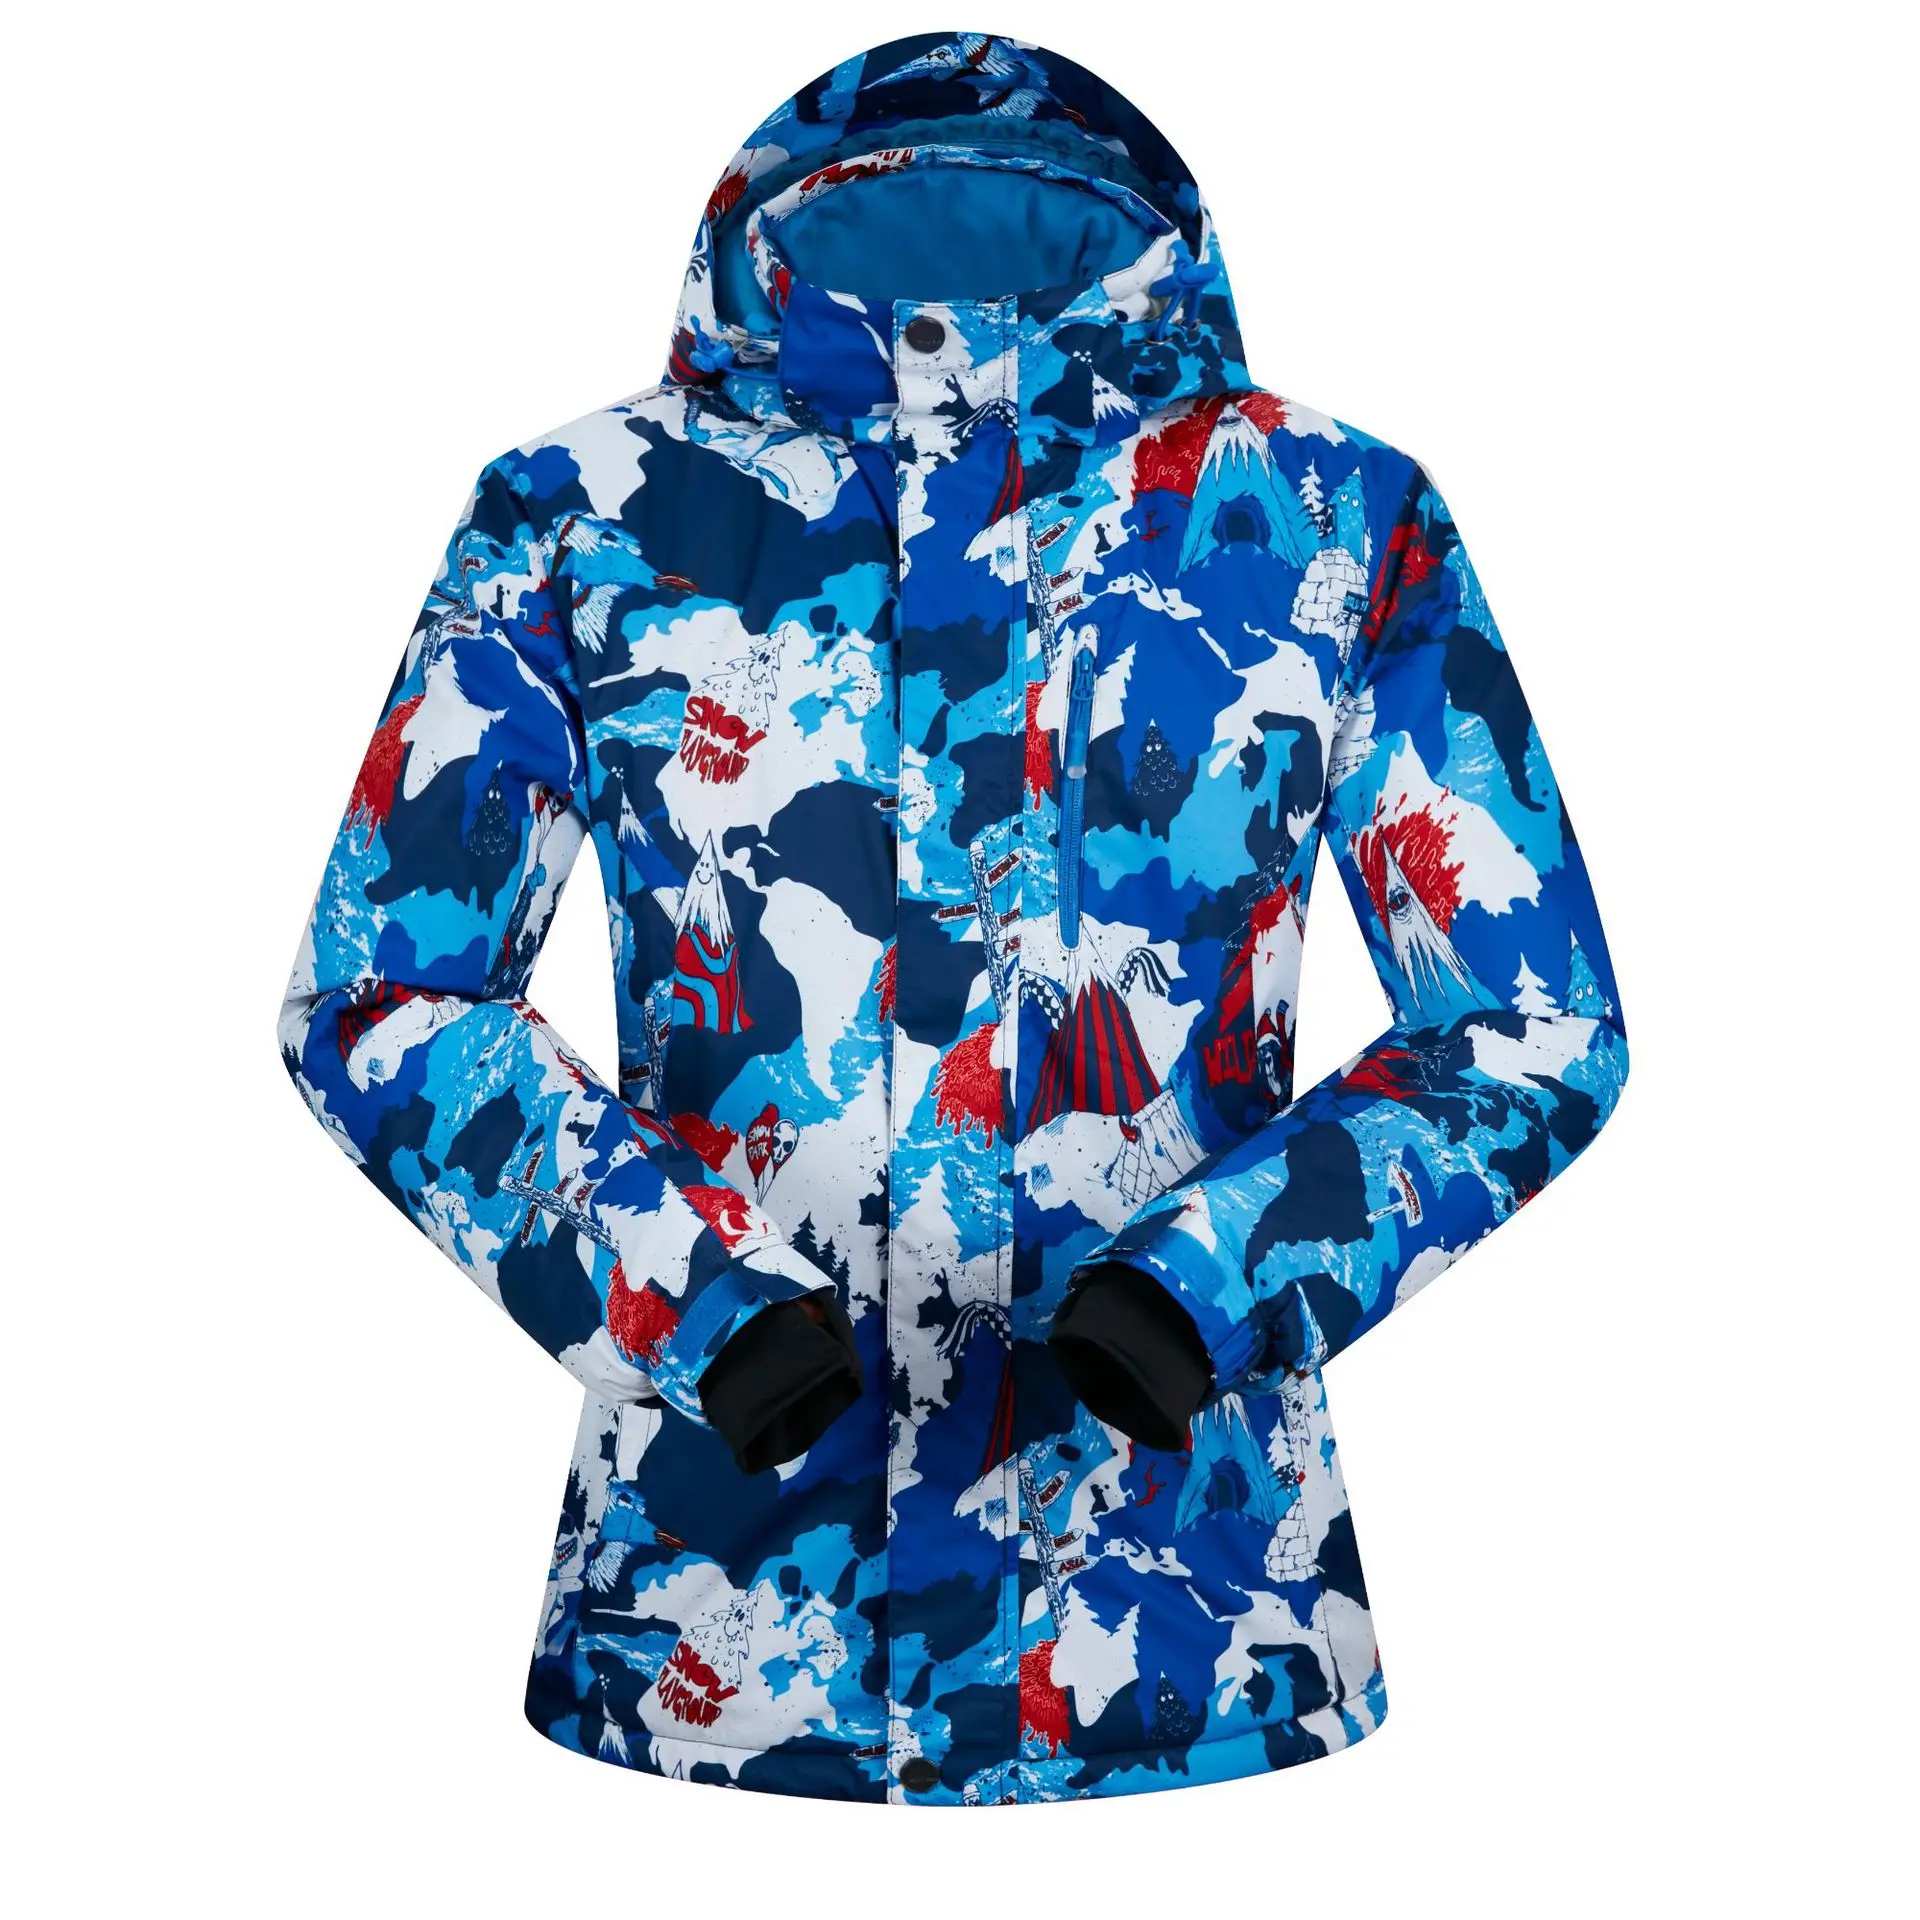 НОВЫЕ куртки для сноубординга для мужчин, термоуличная спортивная одежда, спортивные костюмы, зимние теплые ветрозащитные водонепроницаемые лыжные костюмы XXXL - Цвет: red blue snowman